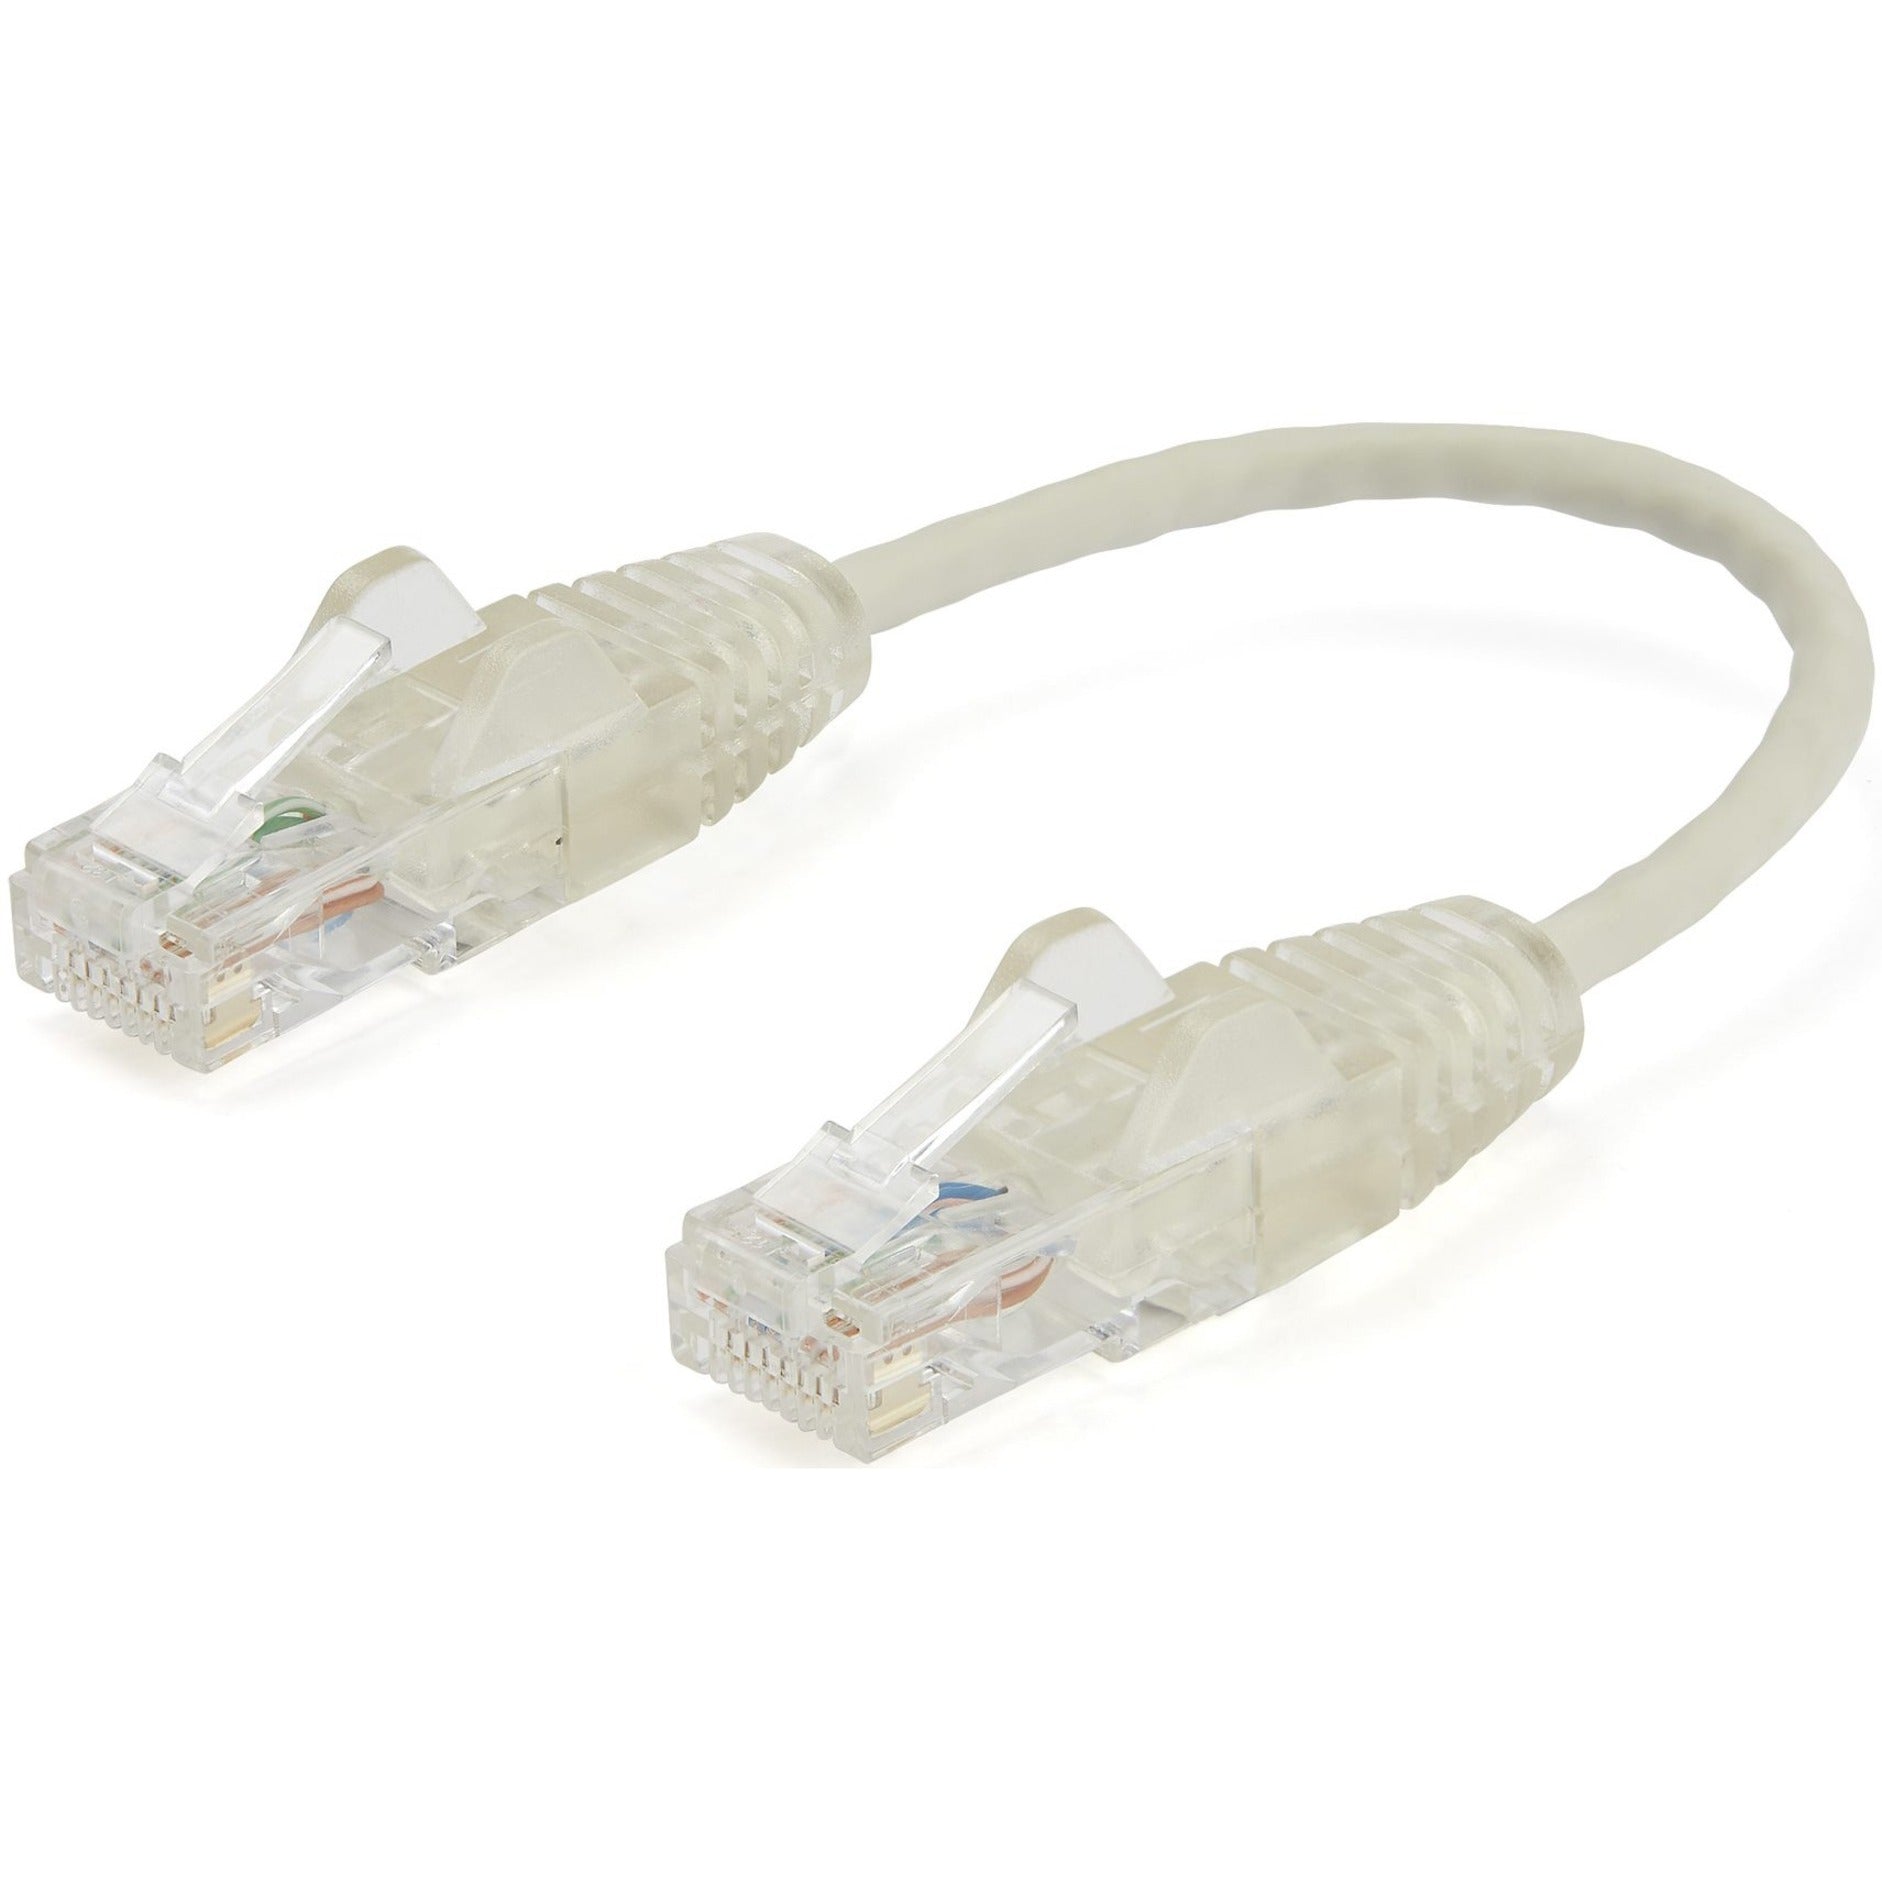 Marca: StarTech.com  Cable de red de parche Cat.6 N6PAT6INGRS 6 pulgadas Gris - Conectores RJ45 delgados y sin enganches Cable Cat6 Cable de parche Cat6 Cable de red Cat6